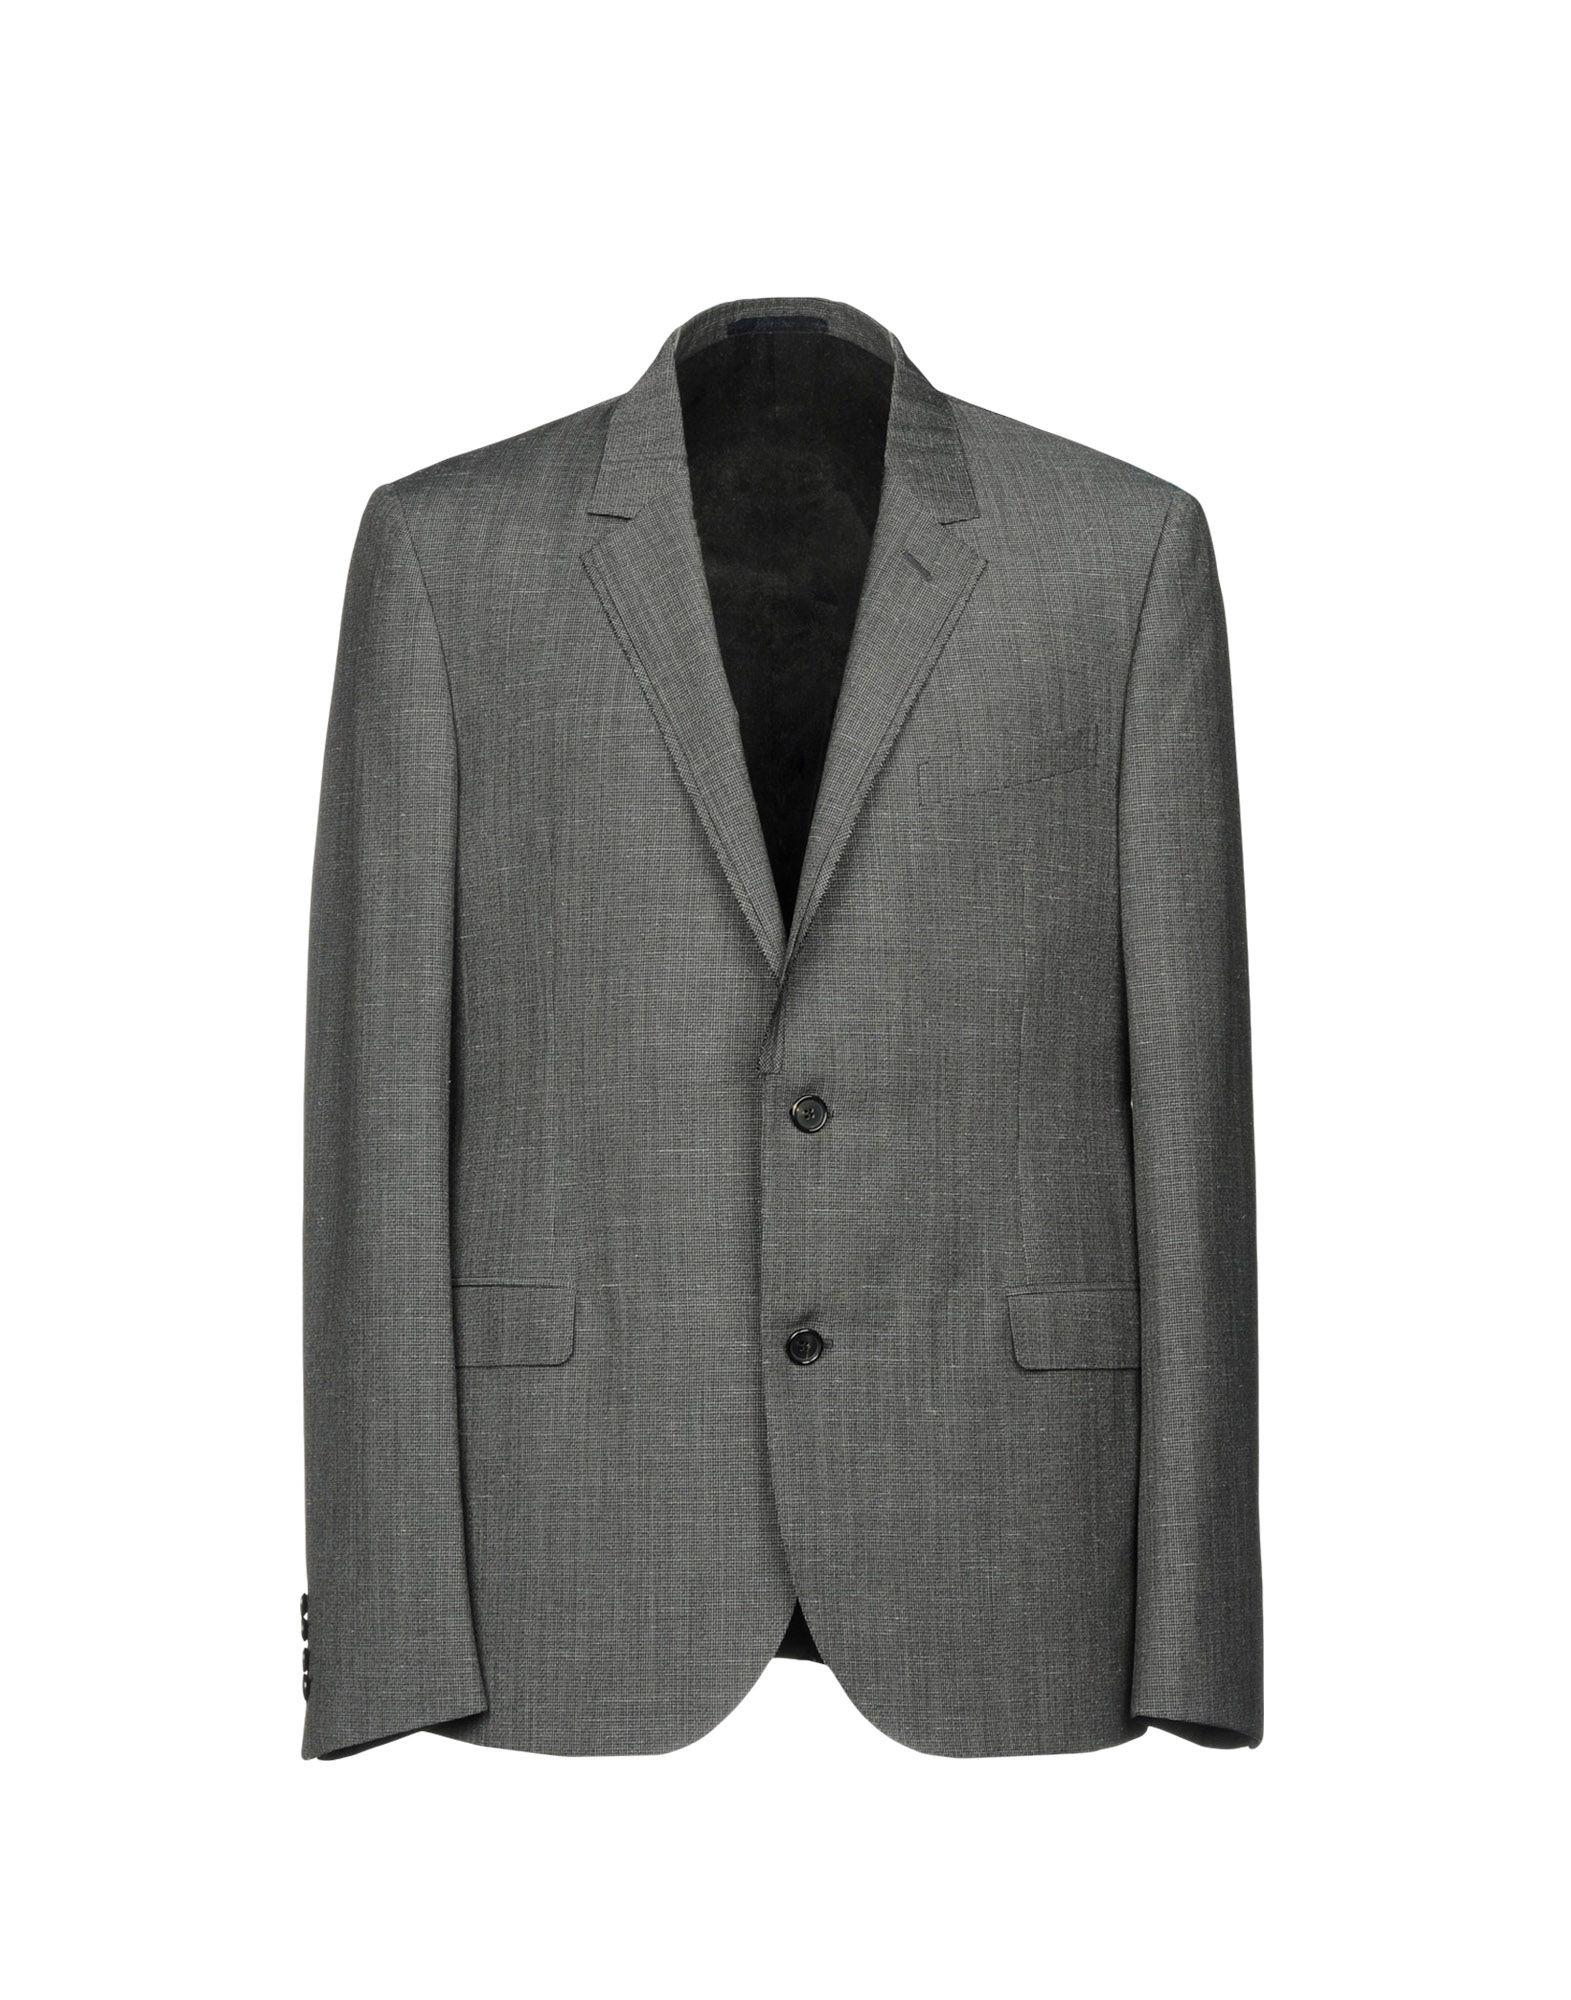 Lanvin Wool Blazer in Steel Grey (Gray) for Men - Lyst